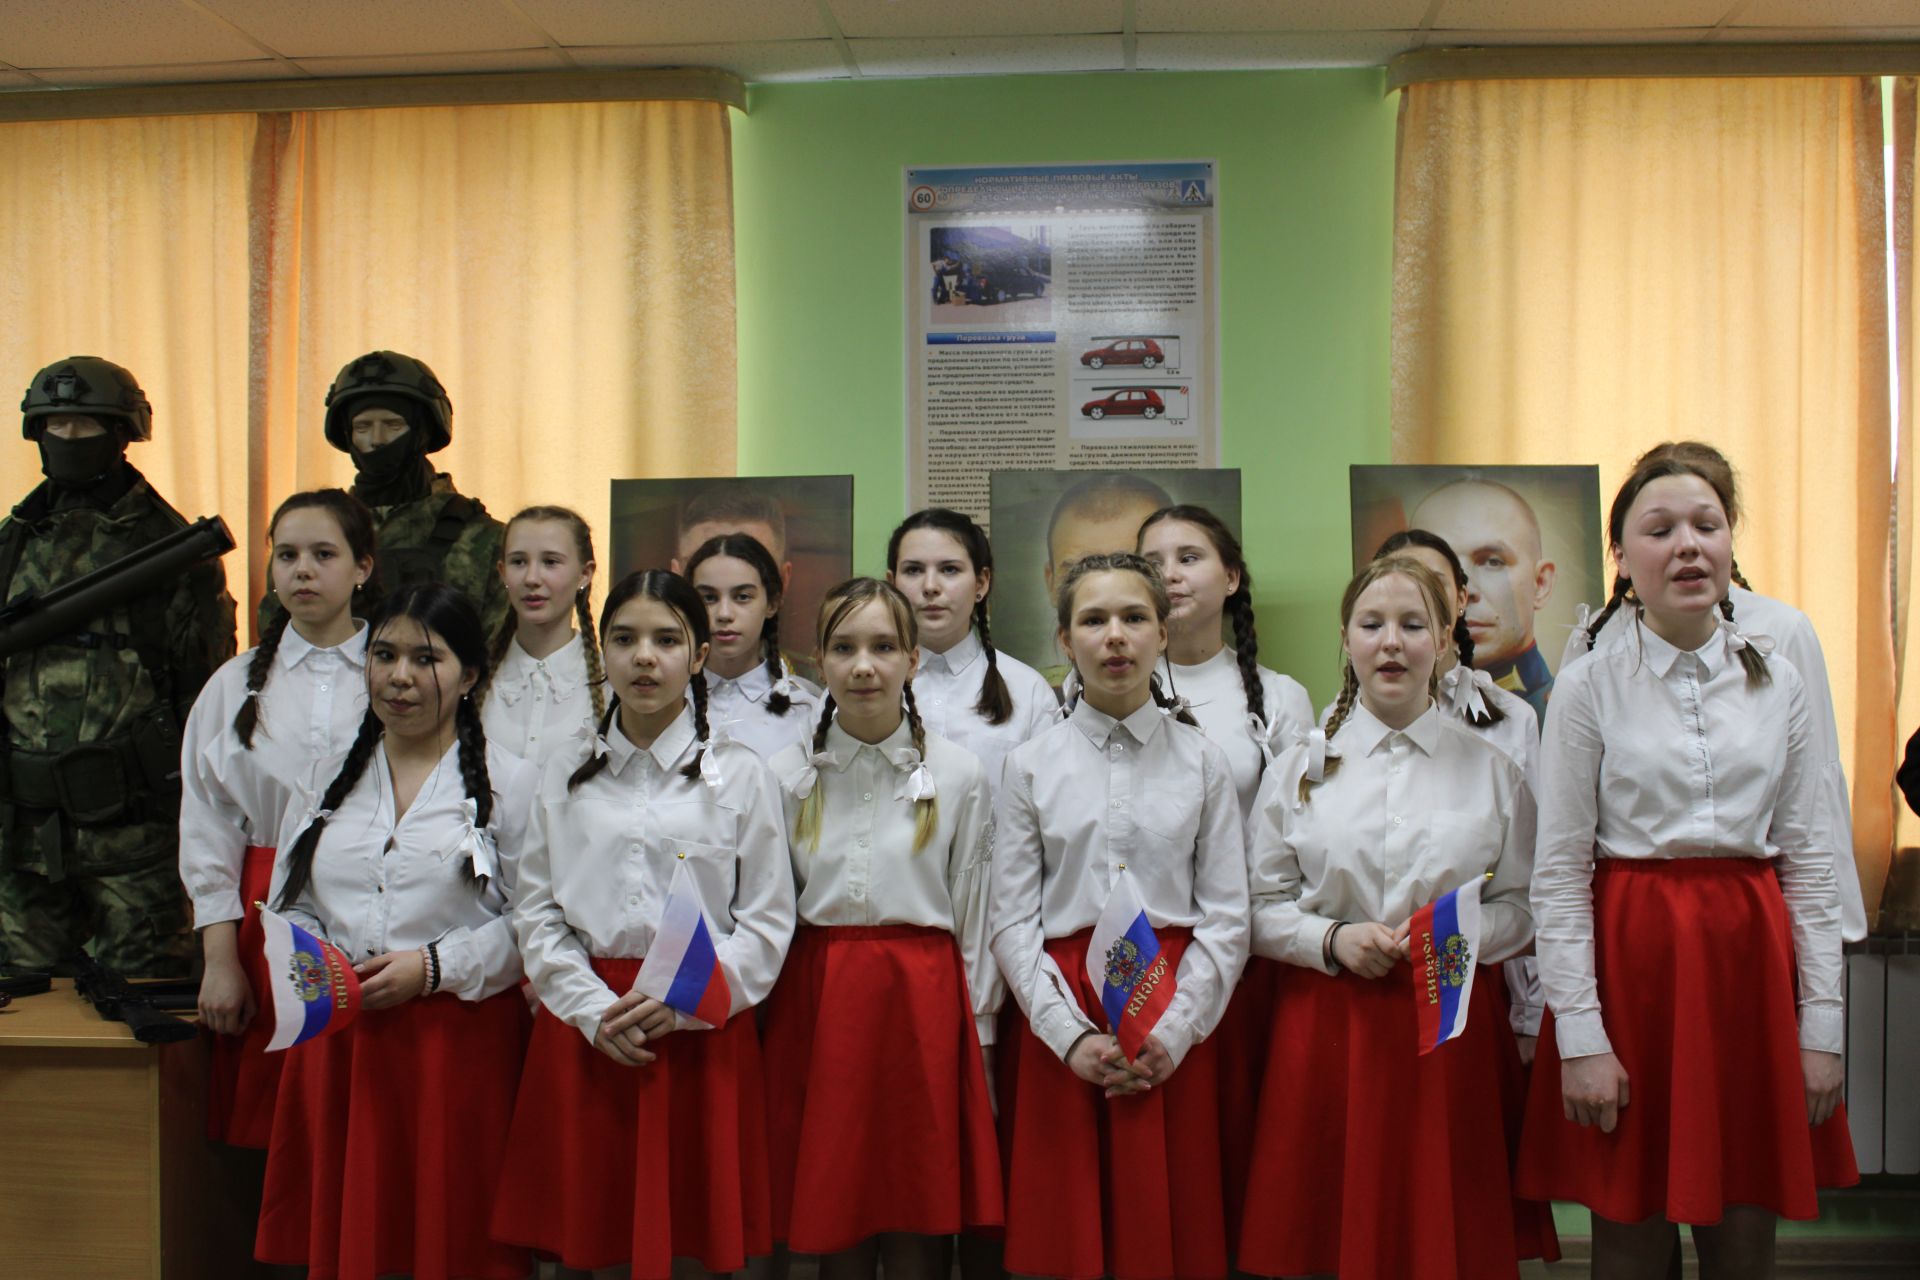 В Азнакаево состоялось открытие передвижной выставки, посвященной участникам СВО